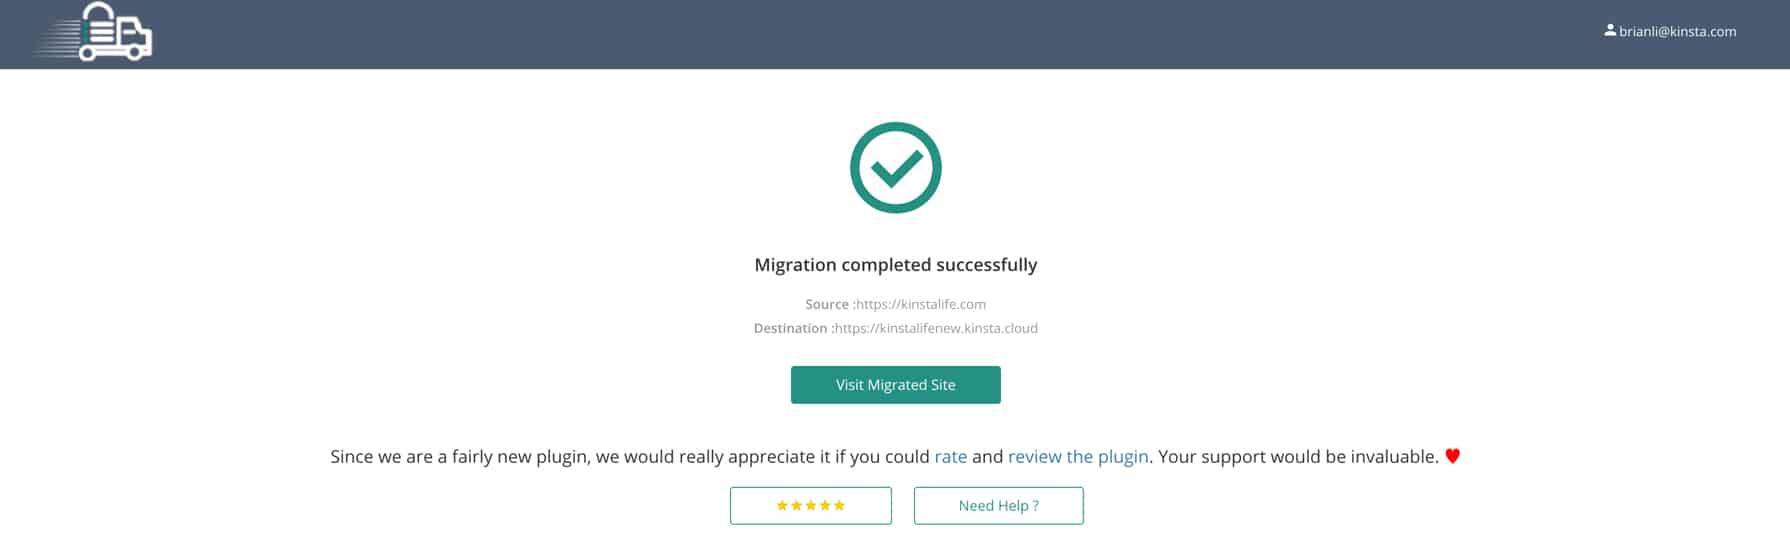 Schermata di Migrate Guru che conferma il buon esito della migrazione del sito WordPress.